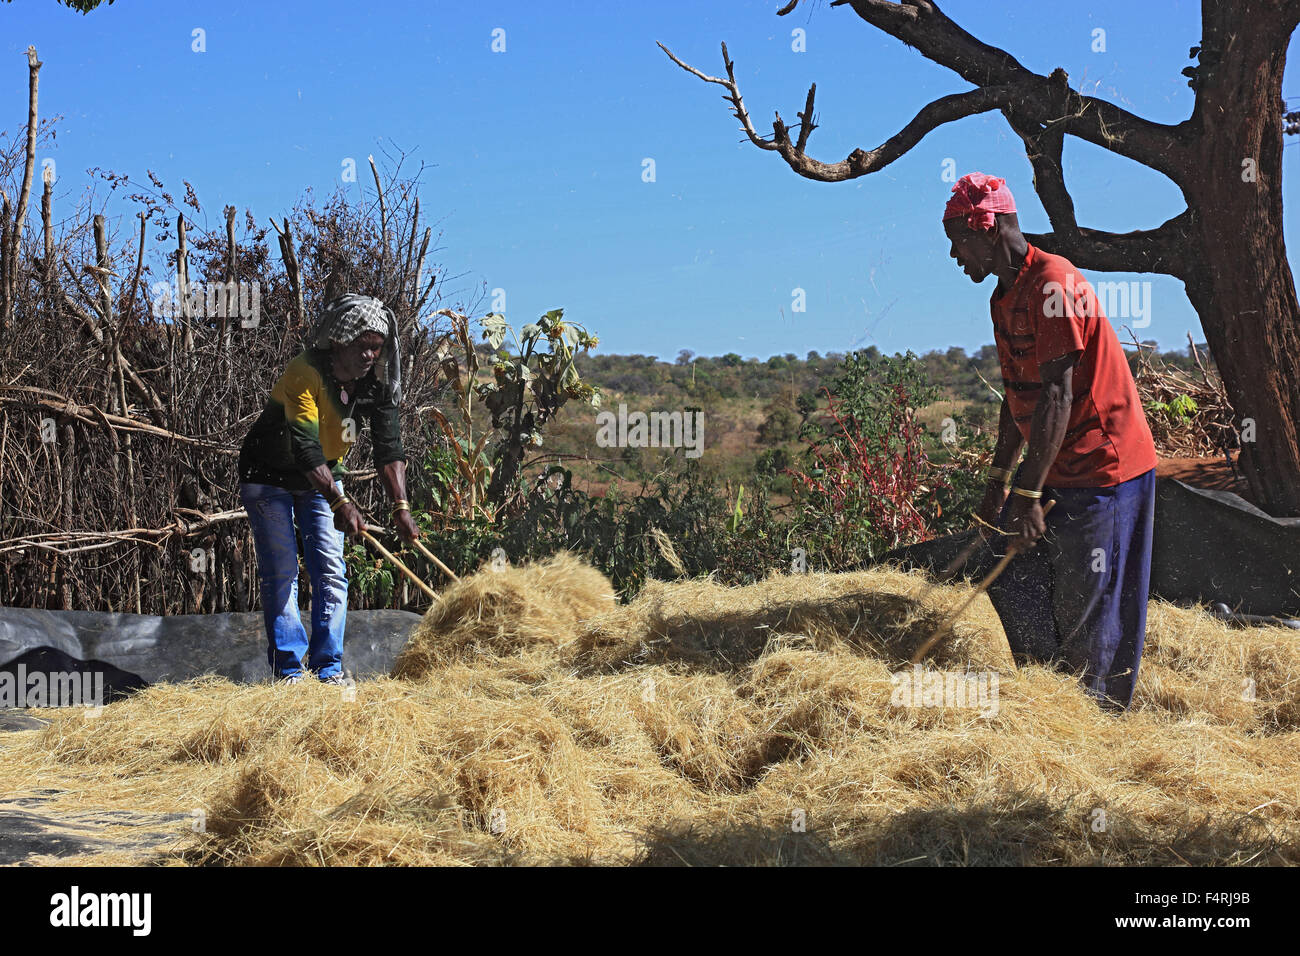 Popolo di benna, in un villaggio benna, trebbiare teff, grano, staccare i grani dalle orecchie Foto Stock